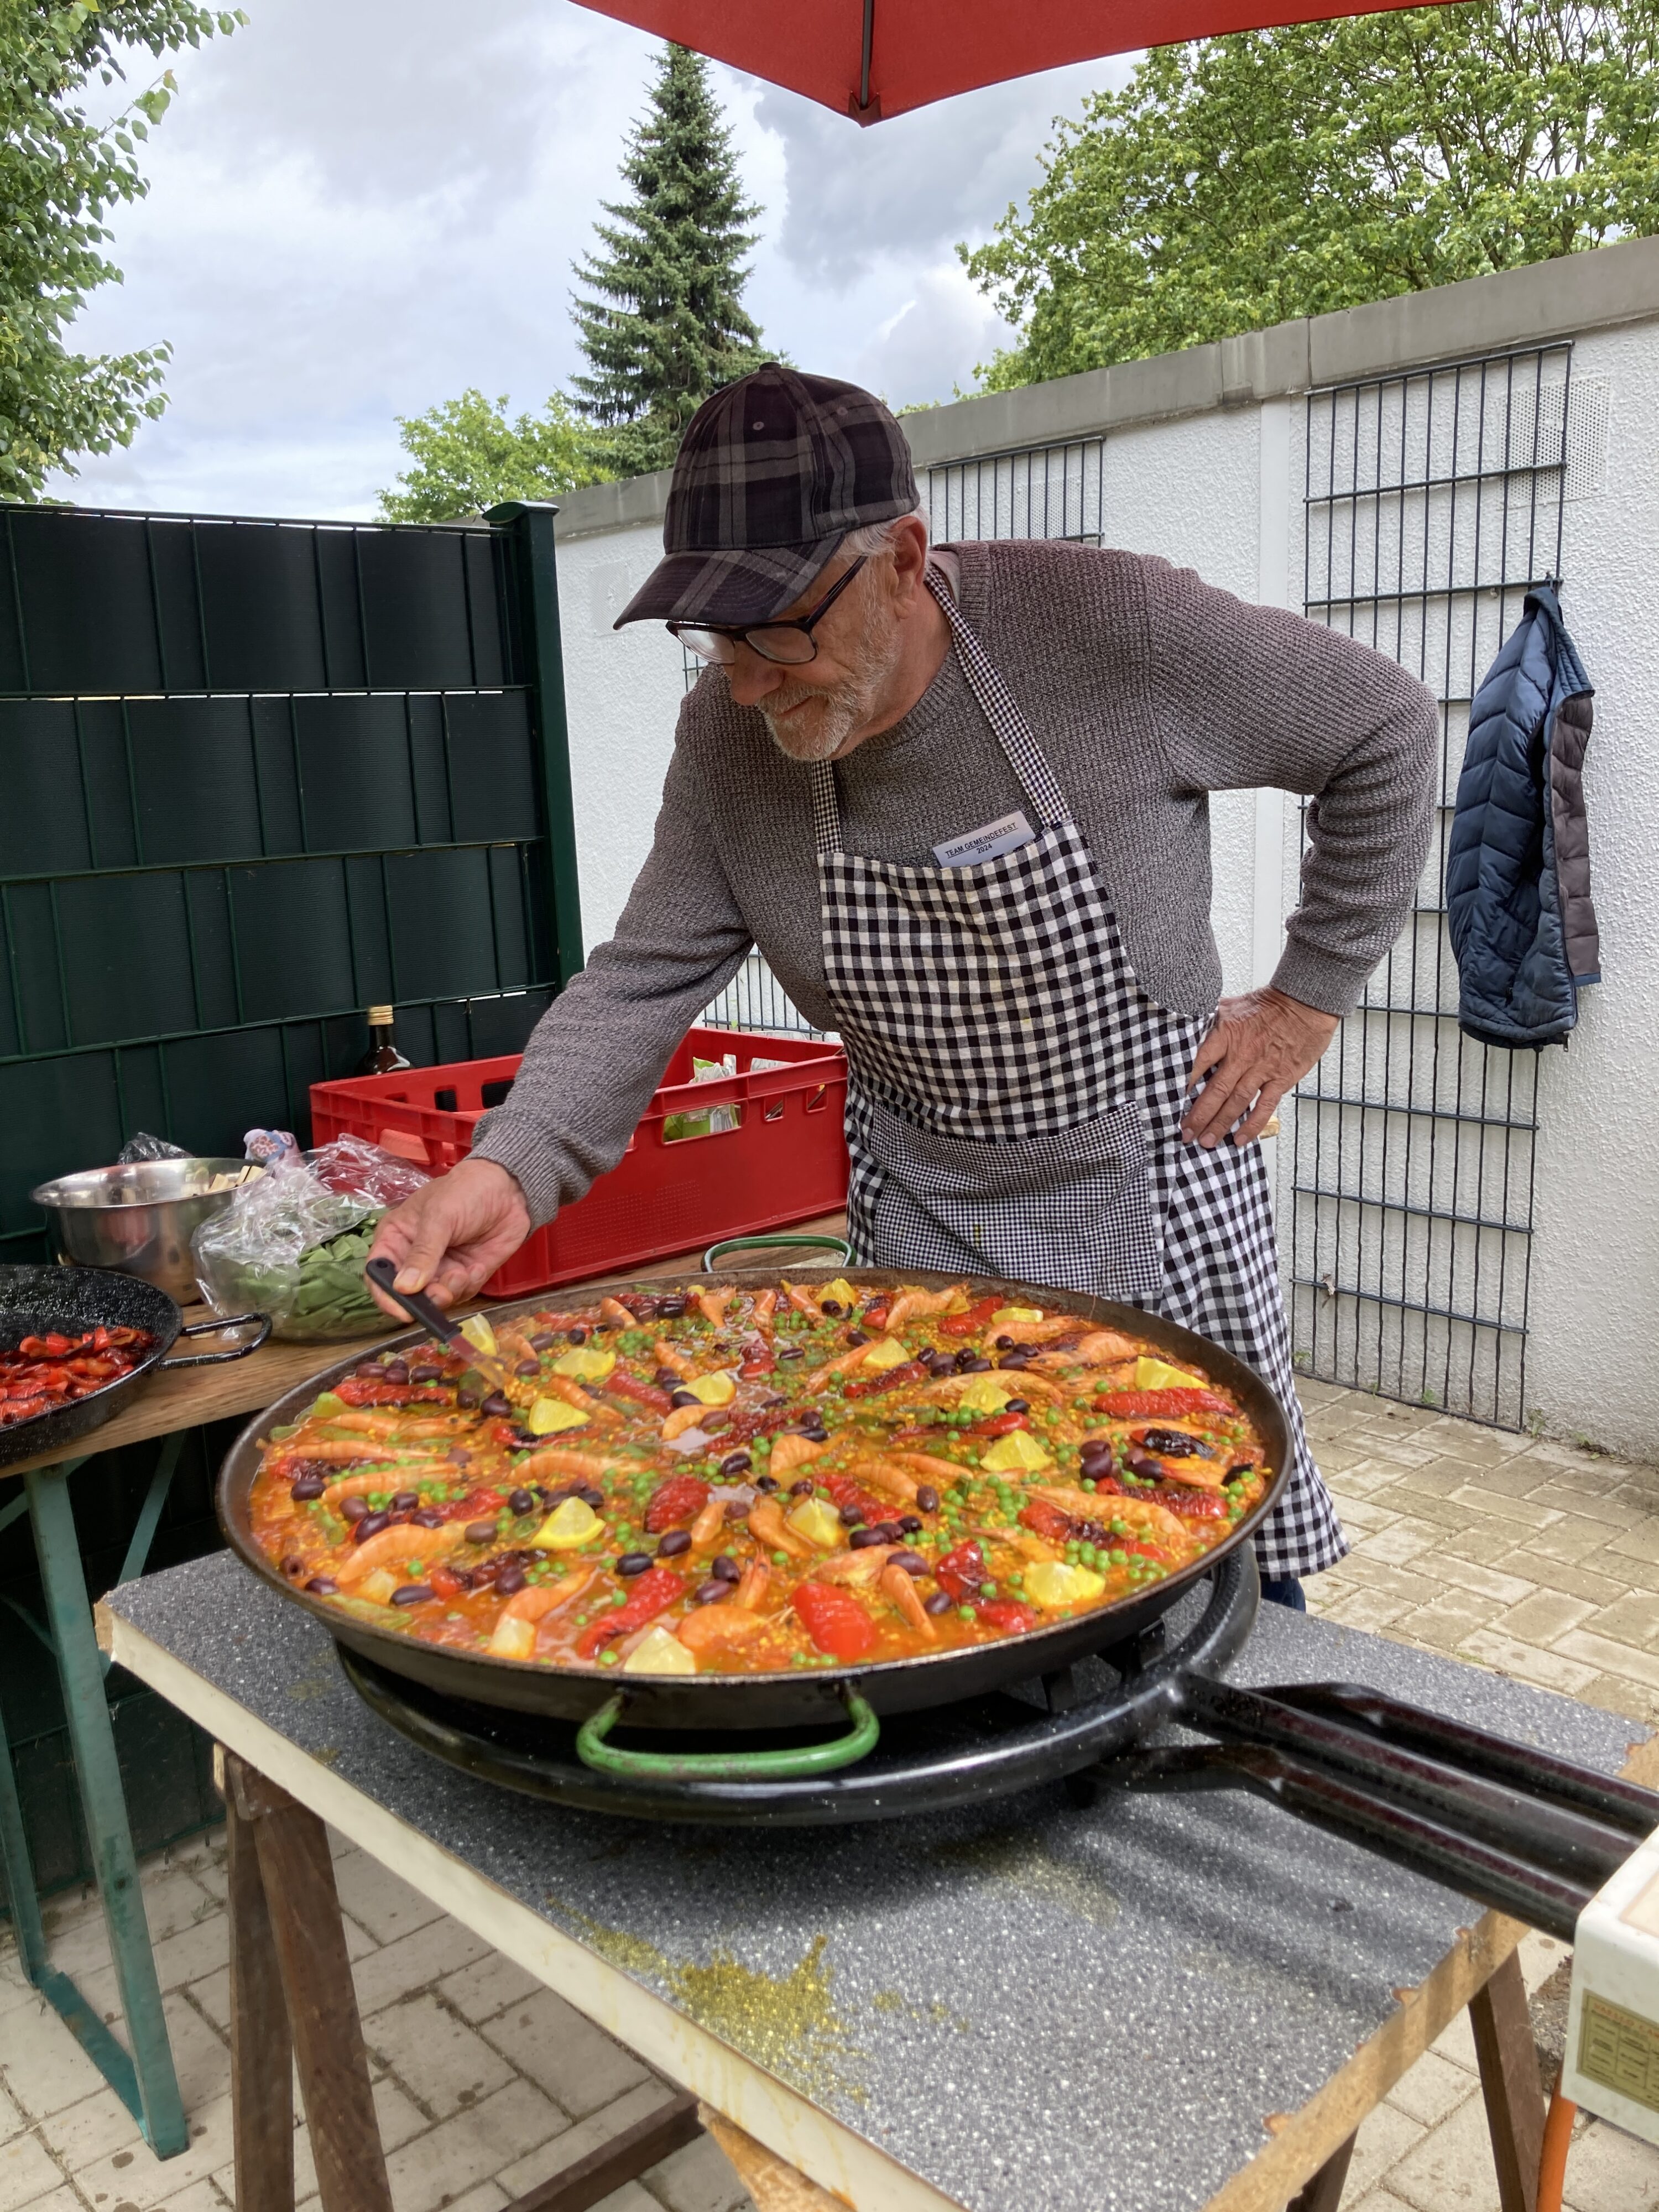 Pfarrer i.R. Heiko Dringenberg kümmert sich hingebungsvoll um eine kunstfertig zusammengestellte Paella in einer riesigen Pfanne.